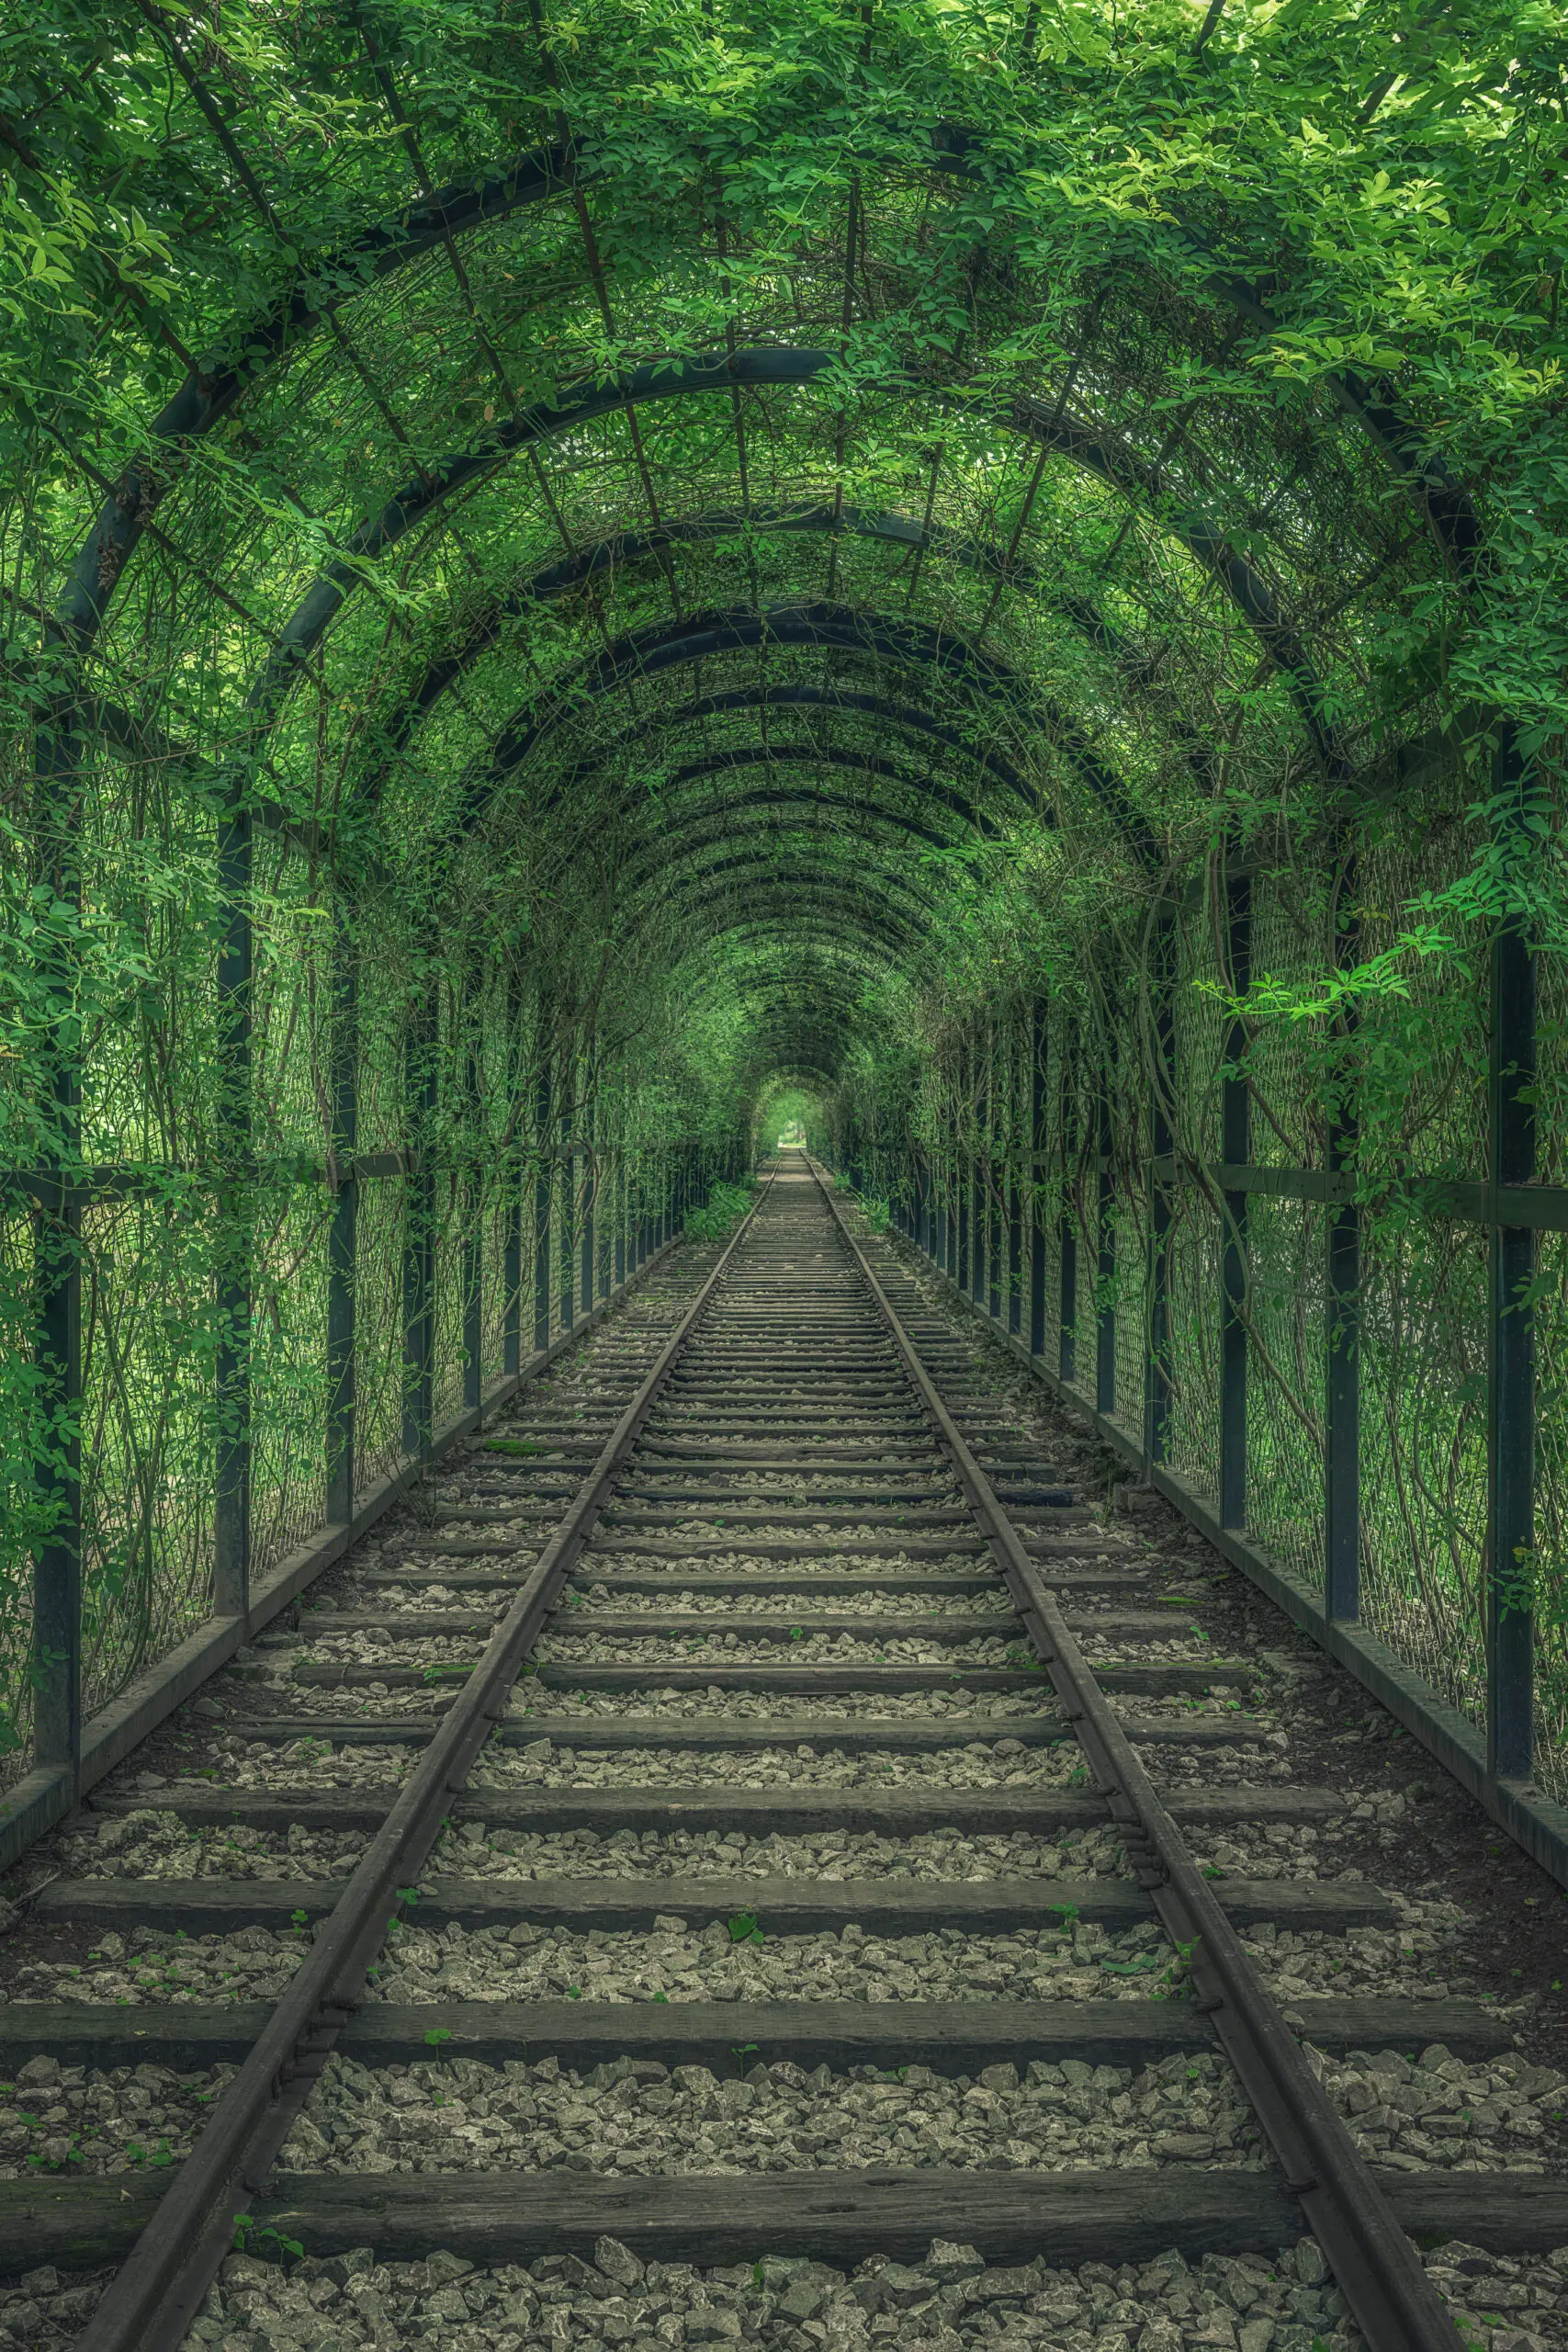 Wandbild (26162) Green Tunnel by Mei Xu präsentiert: Natur